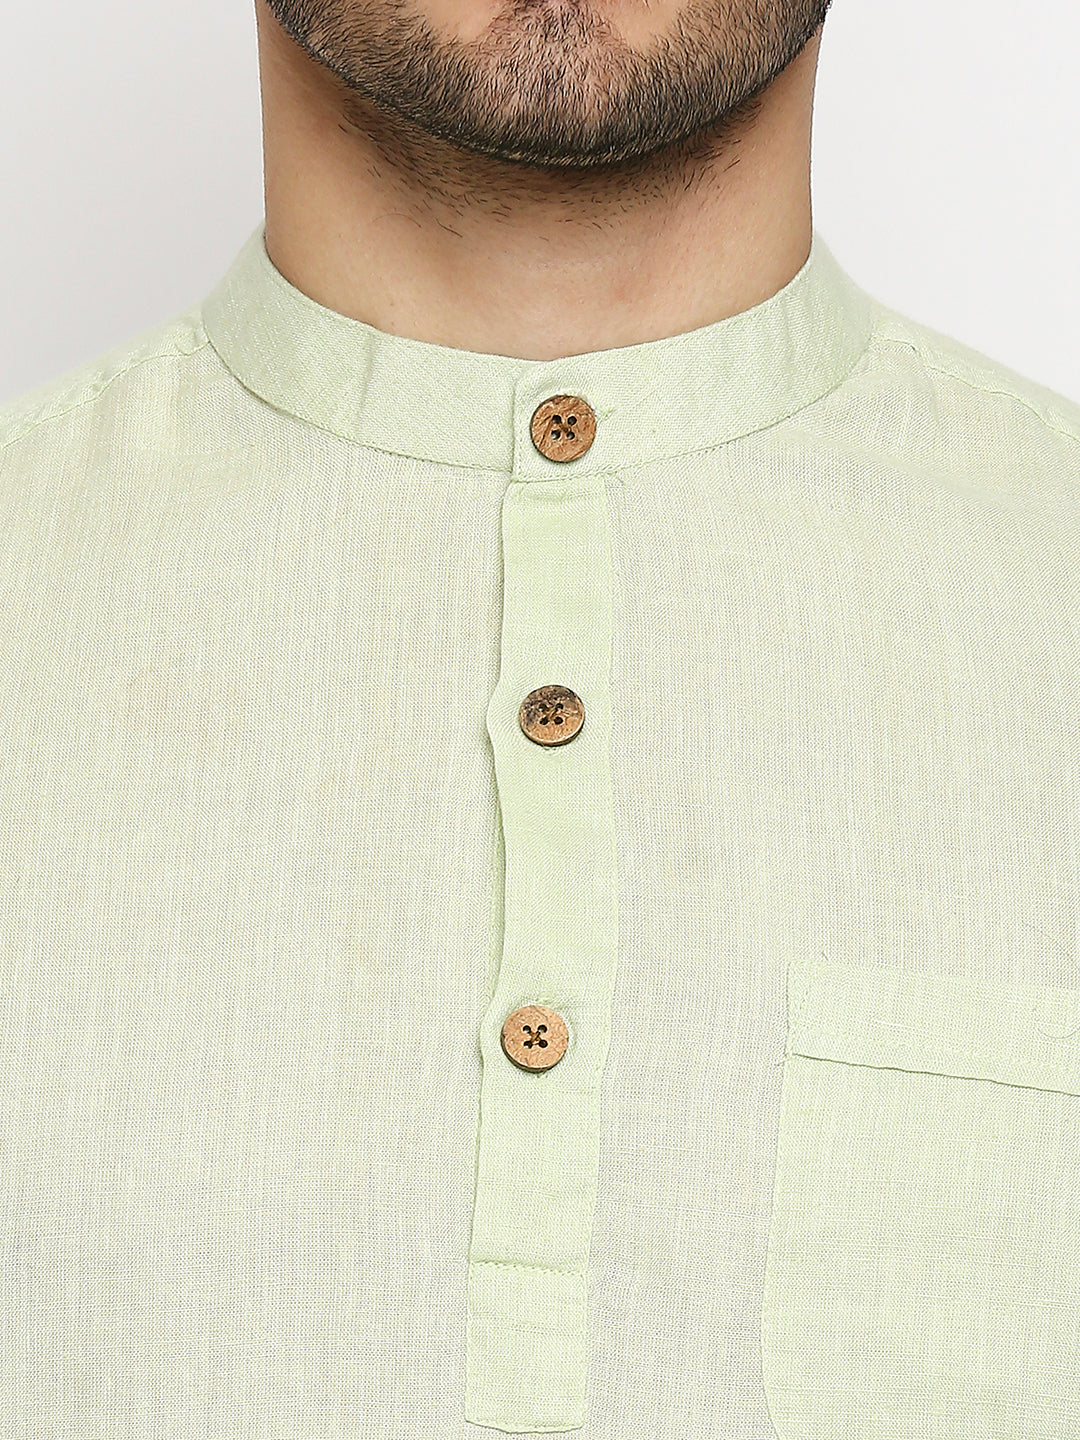 Charmer Collar Band Green Shirt